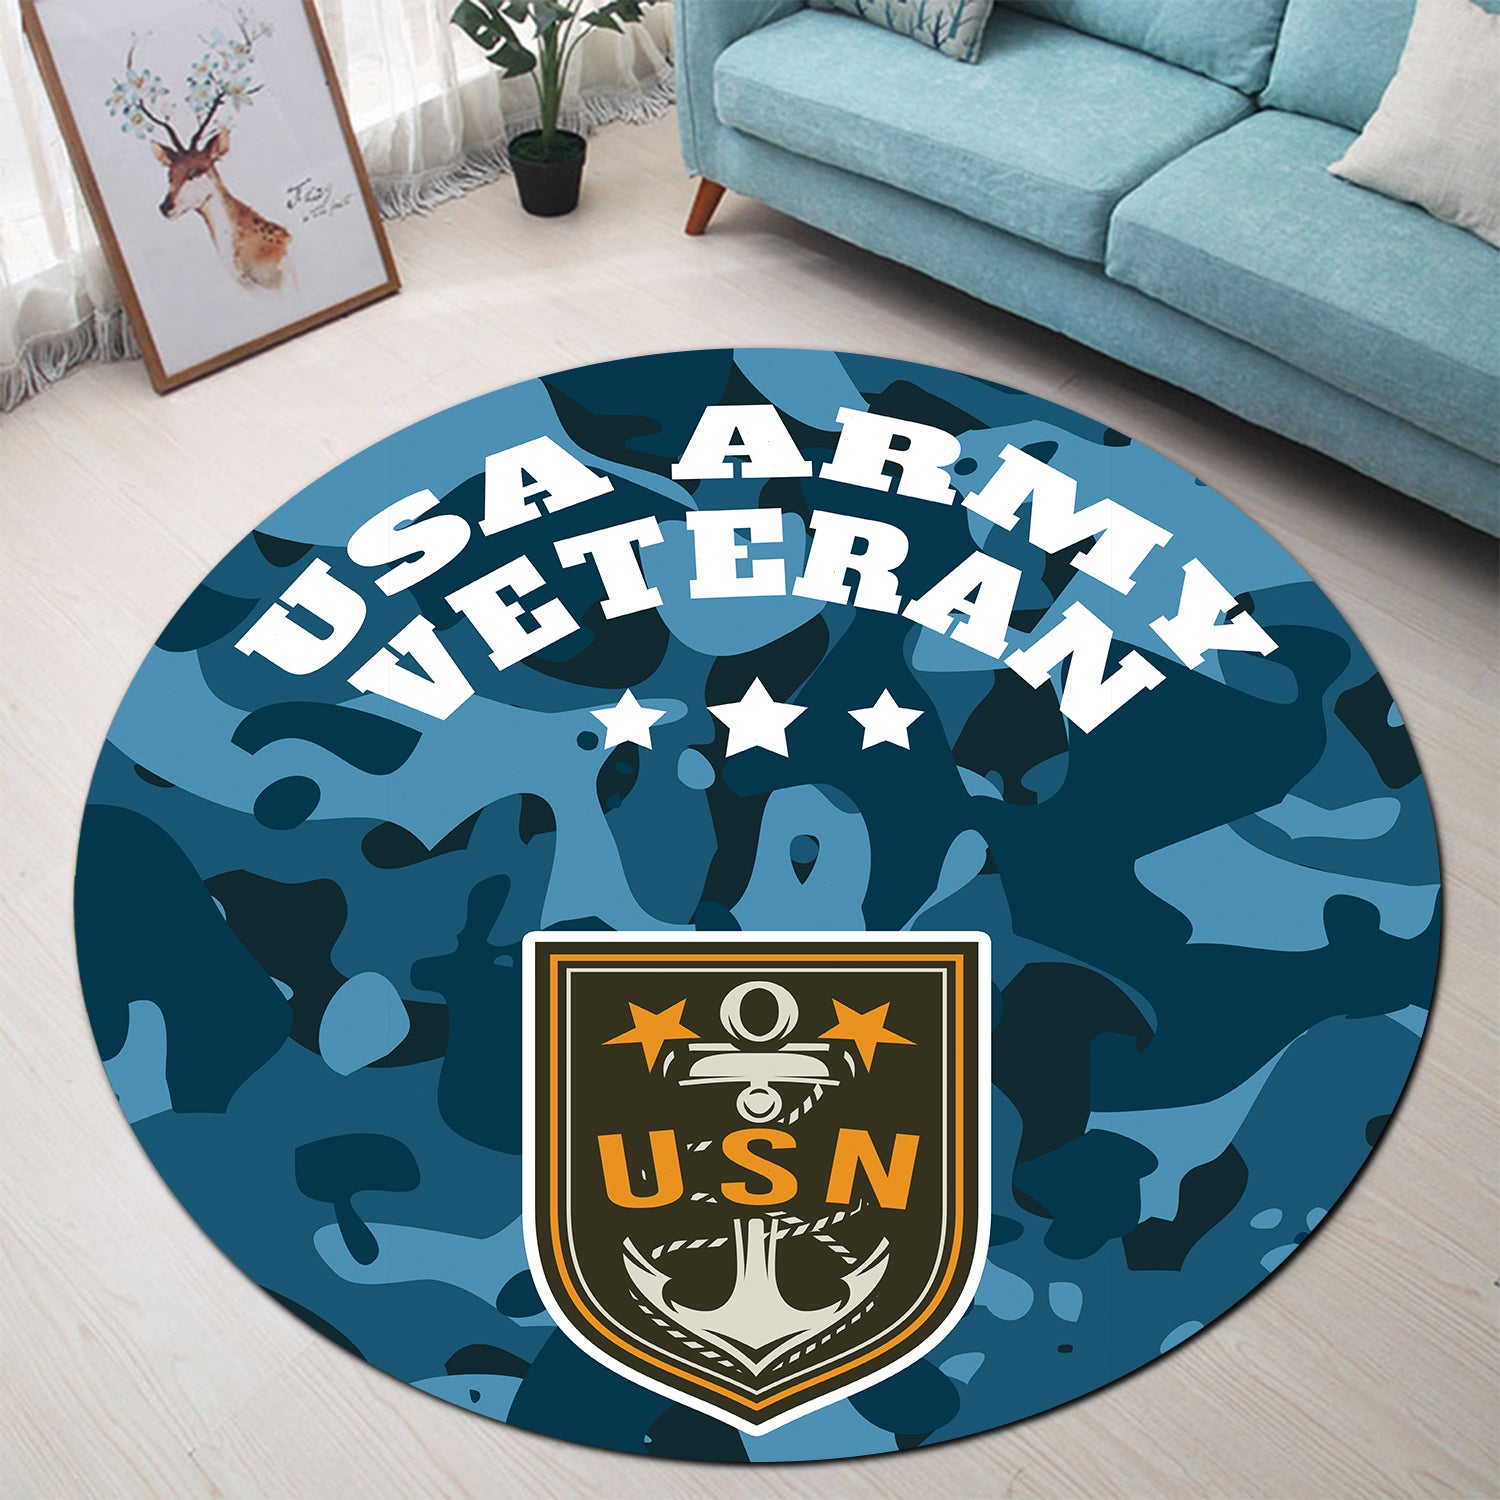 Usa Army Camo Round Carpet Rug Bedroom Livingroom Home Decor Nearkii